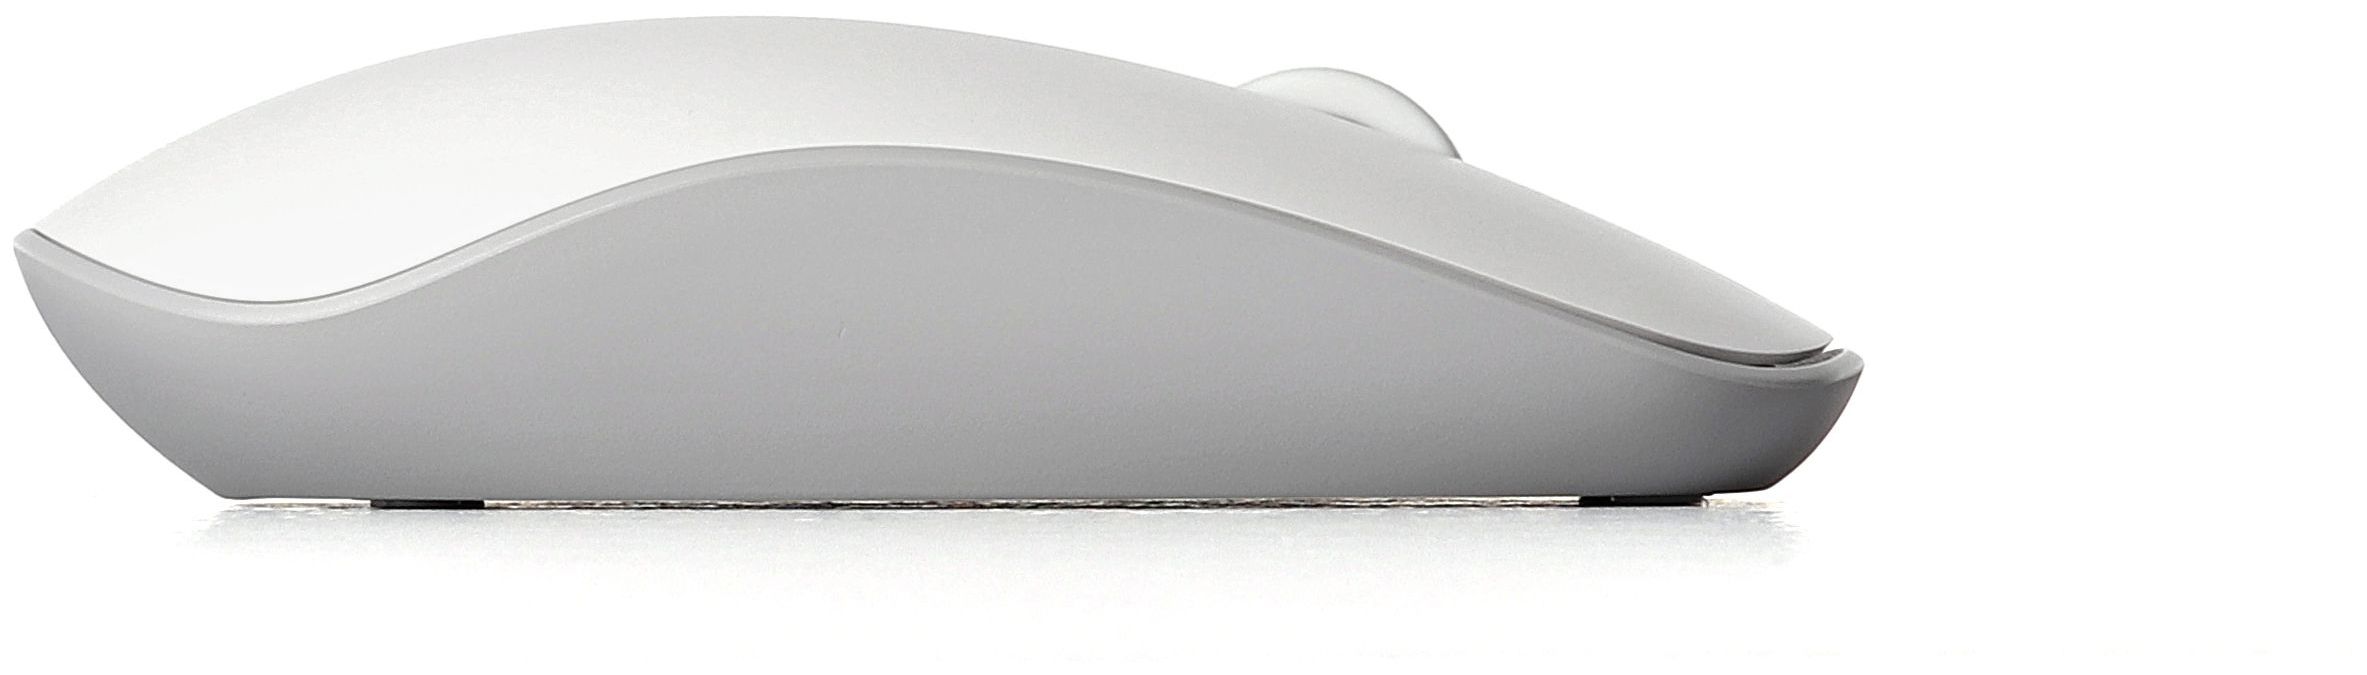 Rapoo M200 Silent 1300 Maus (Weiß) Optisch DPI expert Büro von Technomarkt